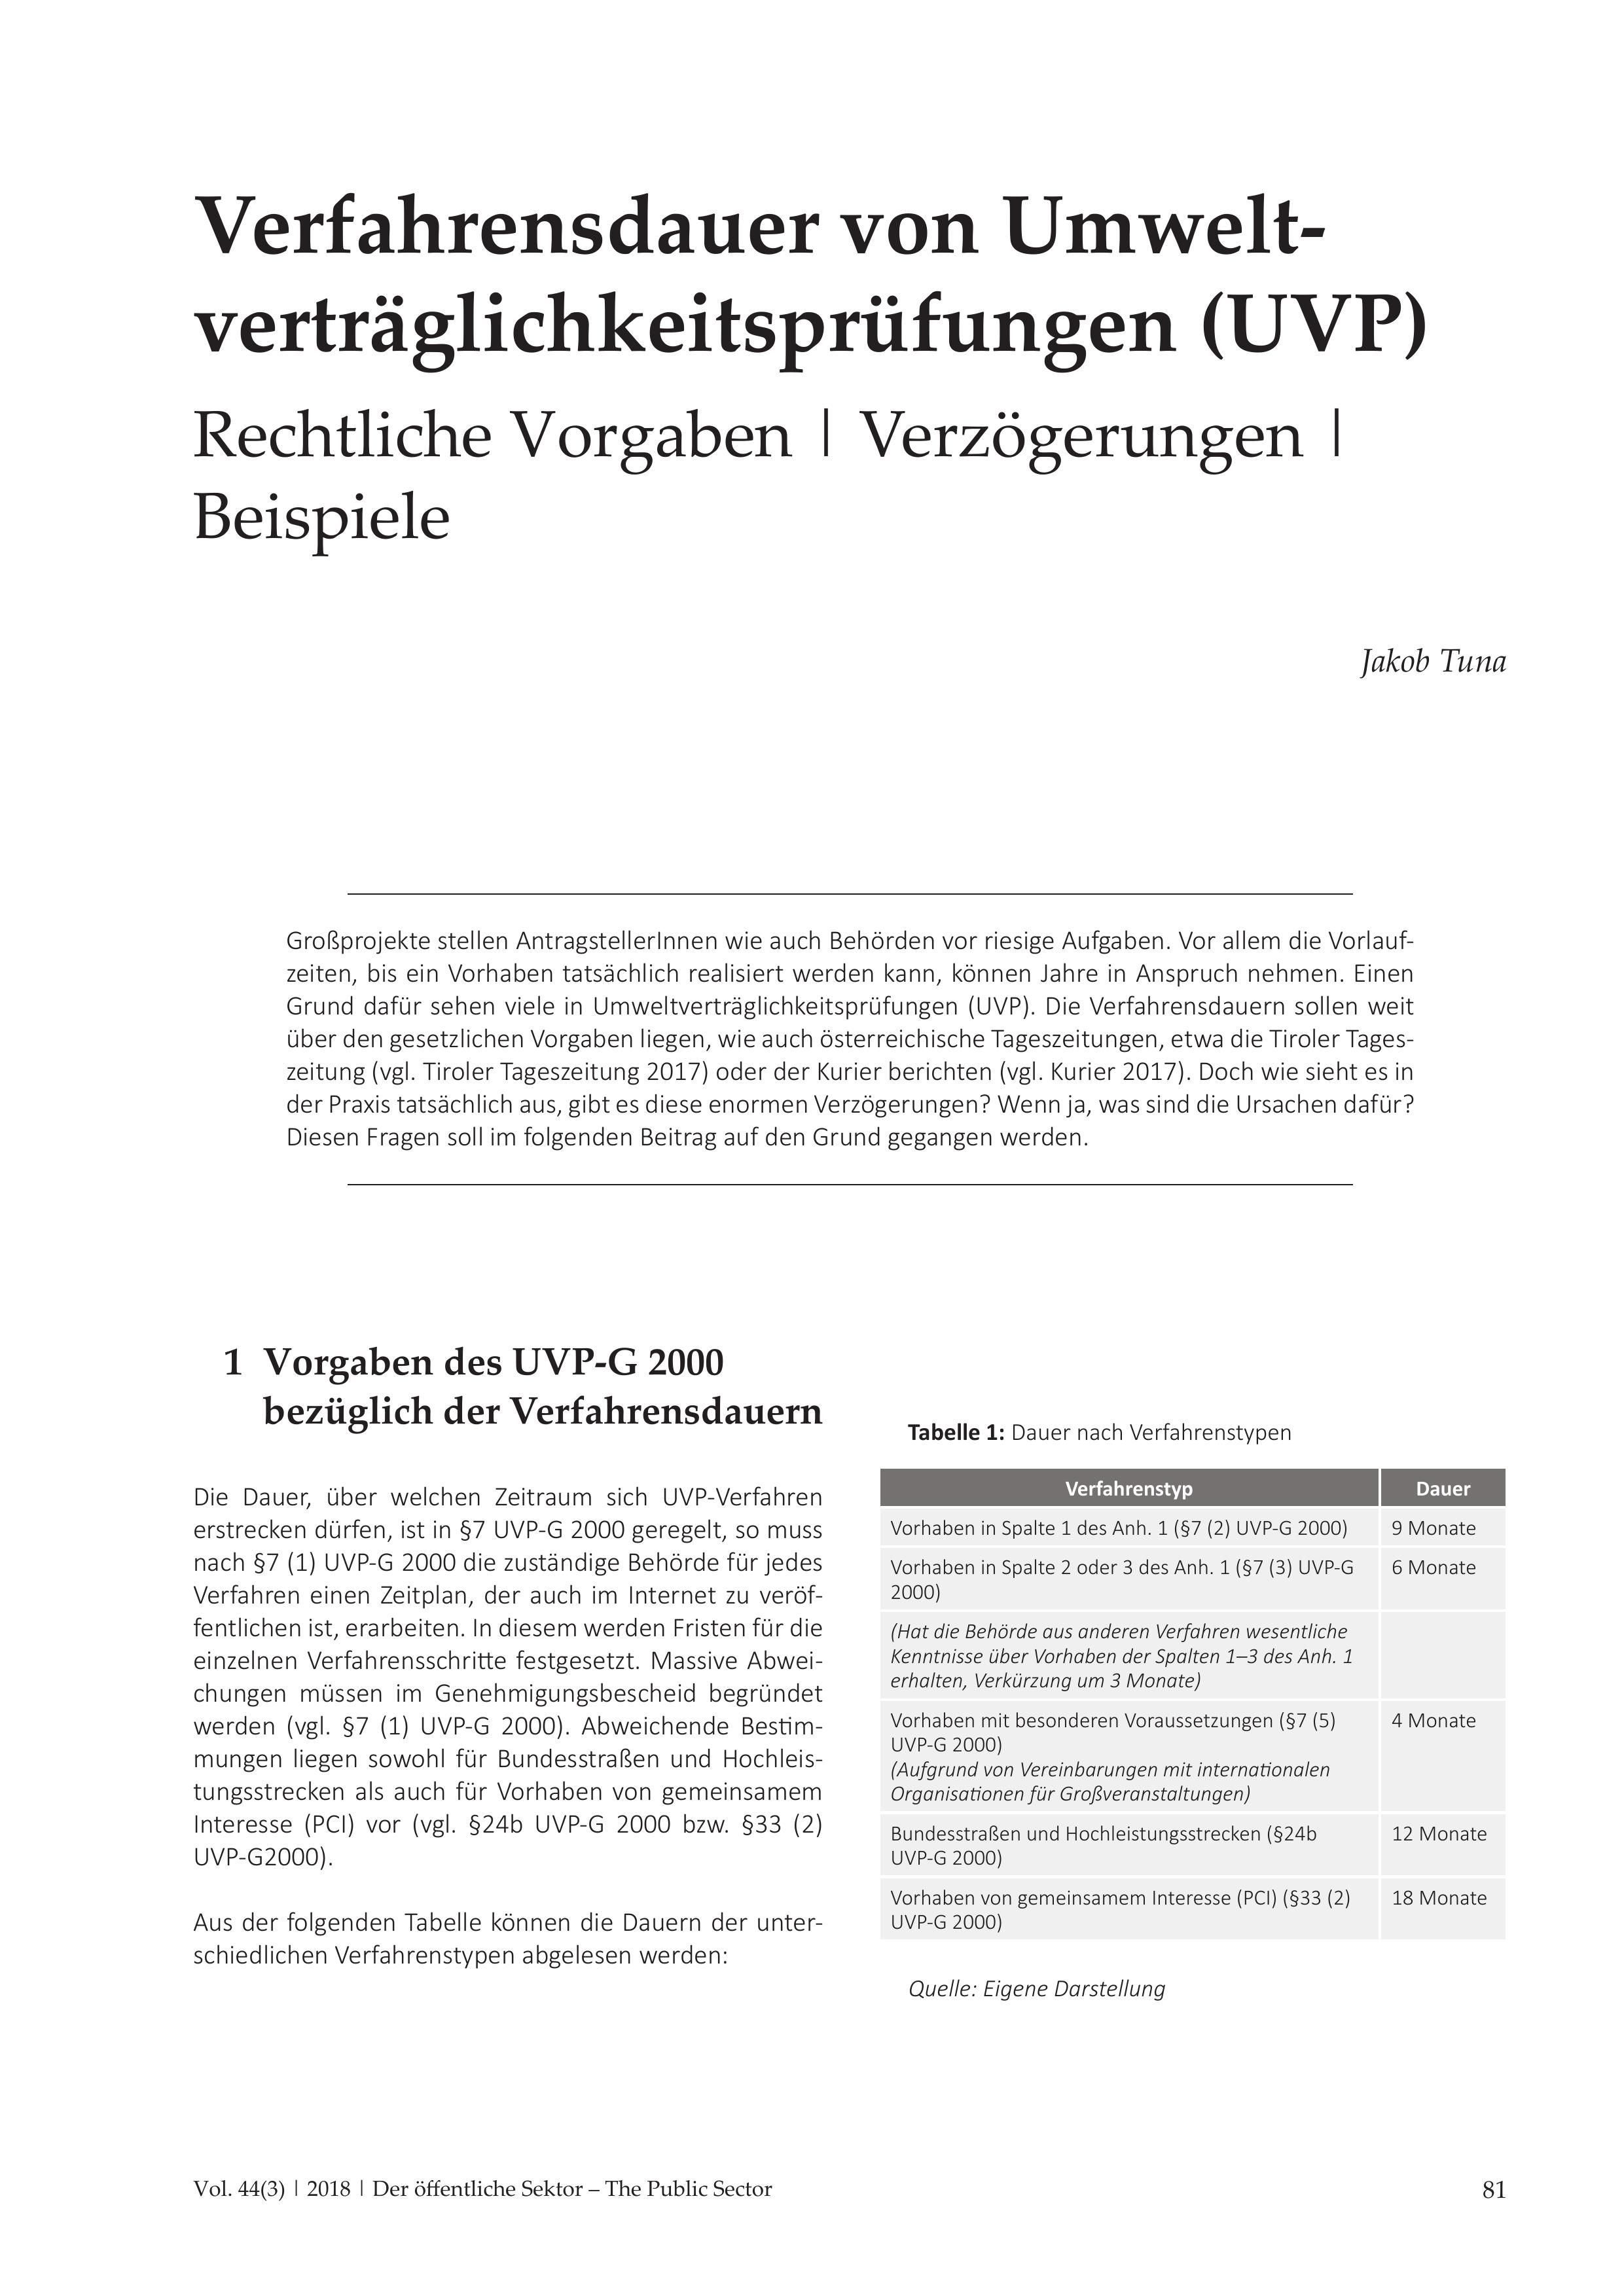 Verfahrensdauer von Umweltverträglichkeitsprüfungen (UVP)